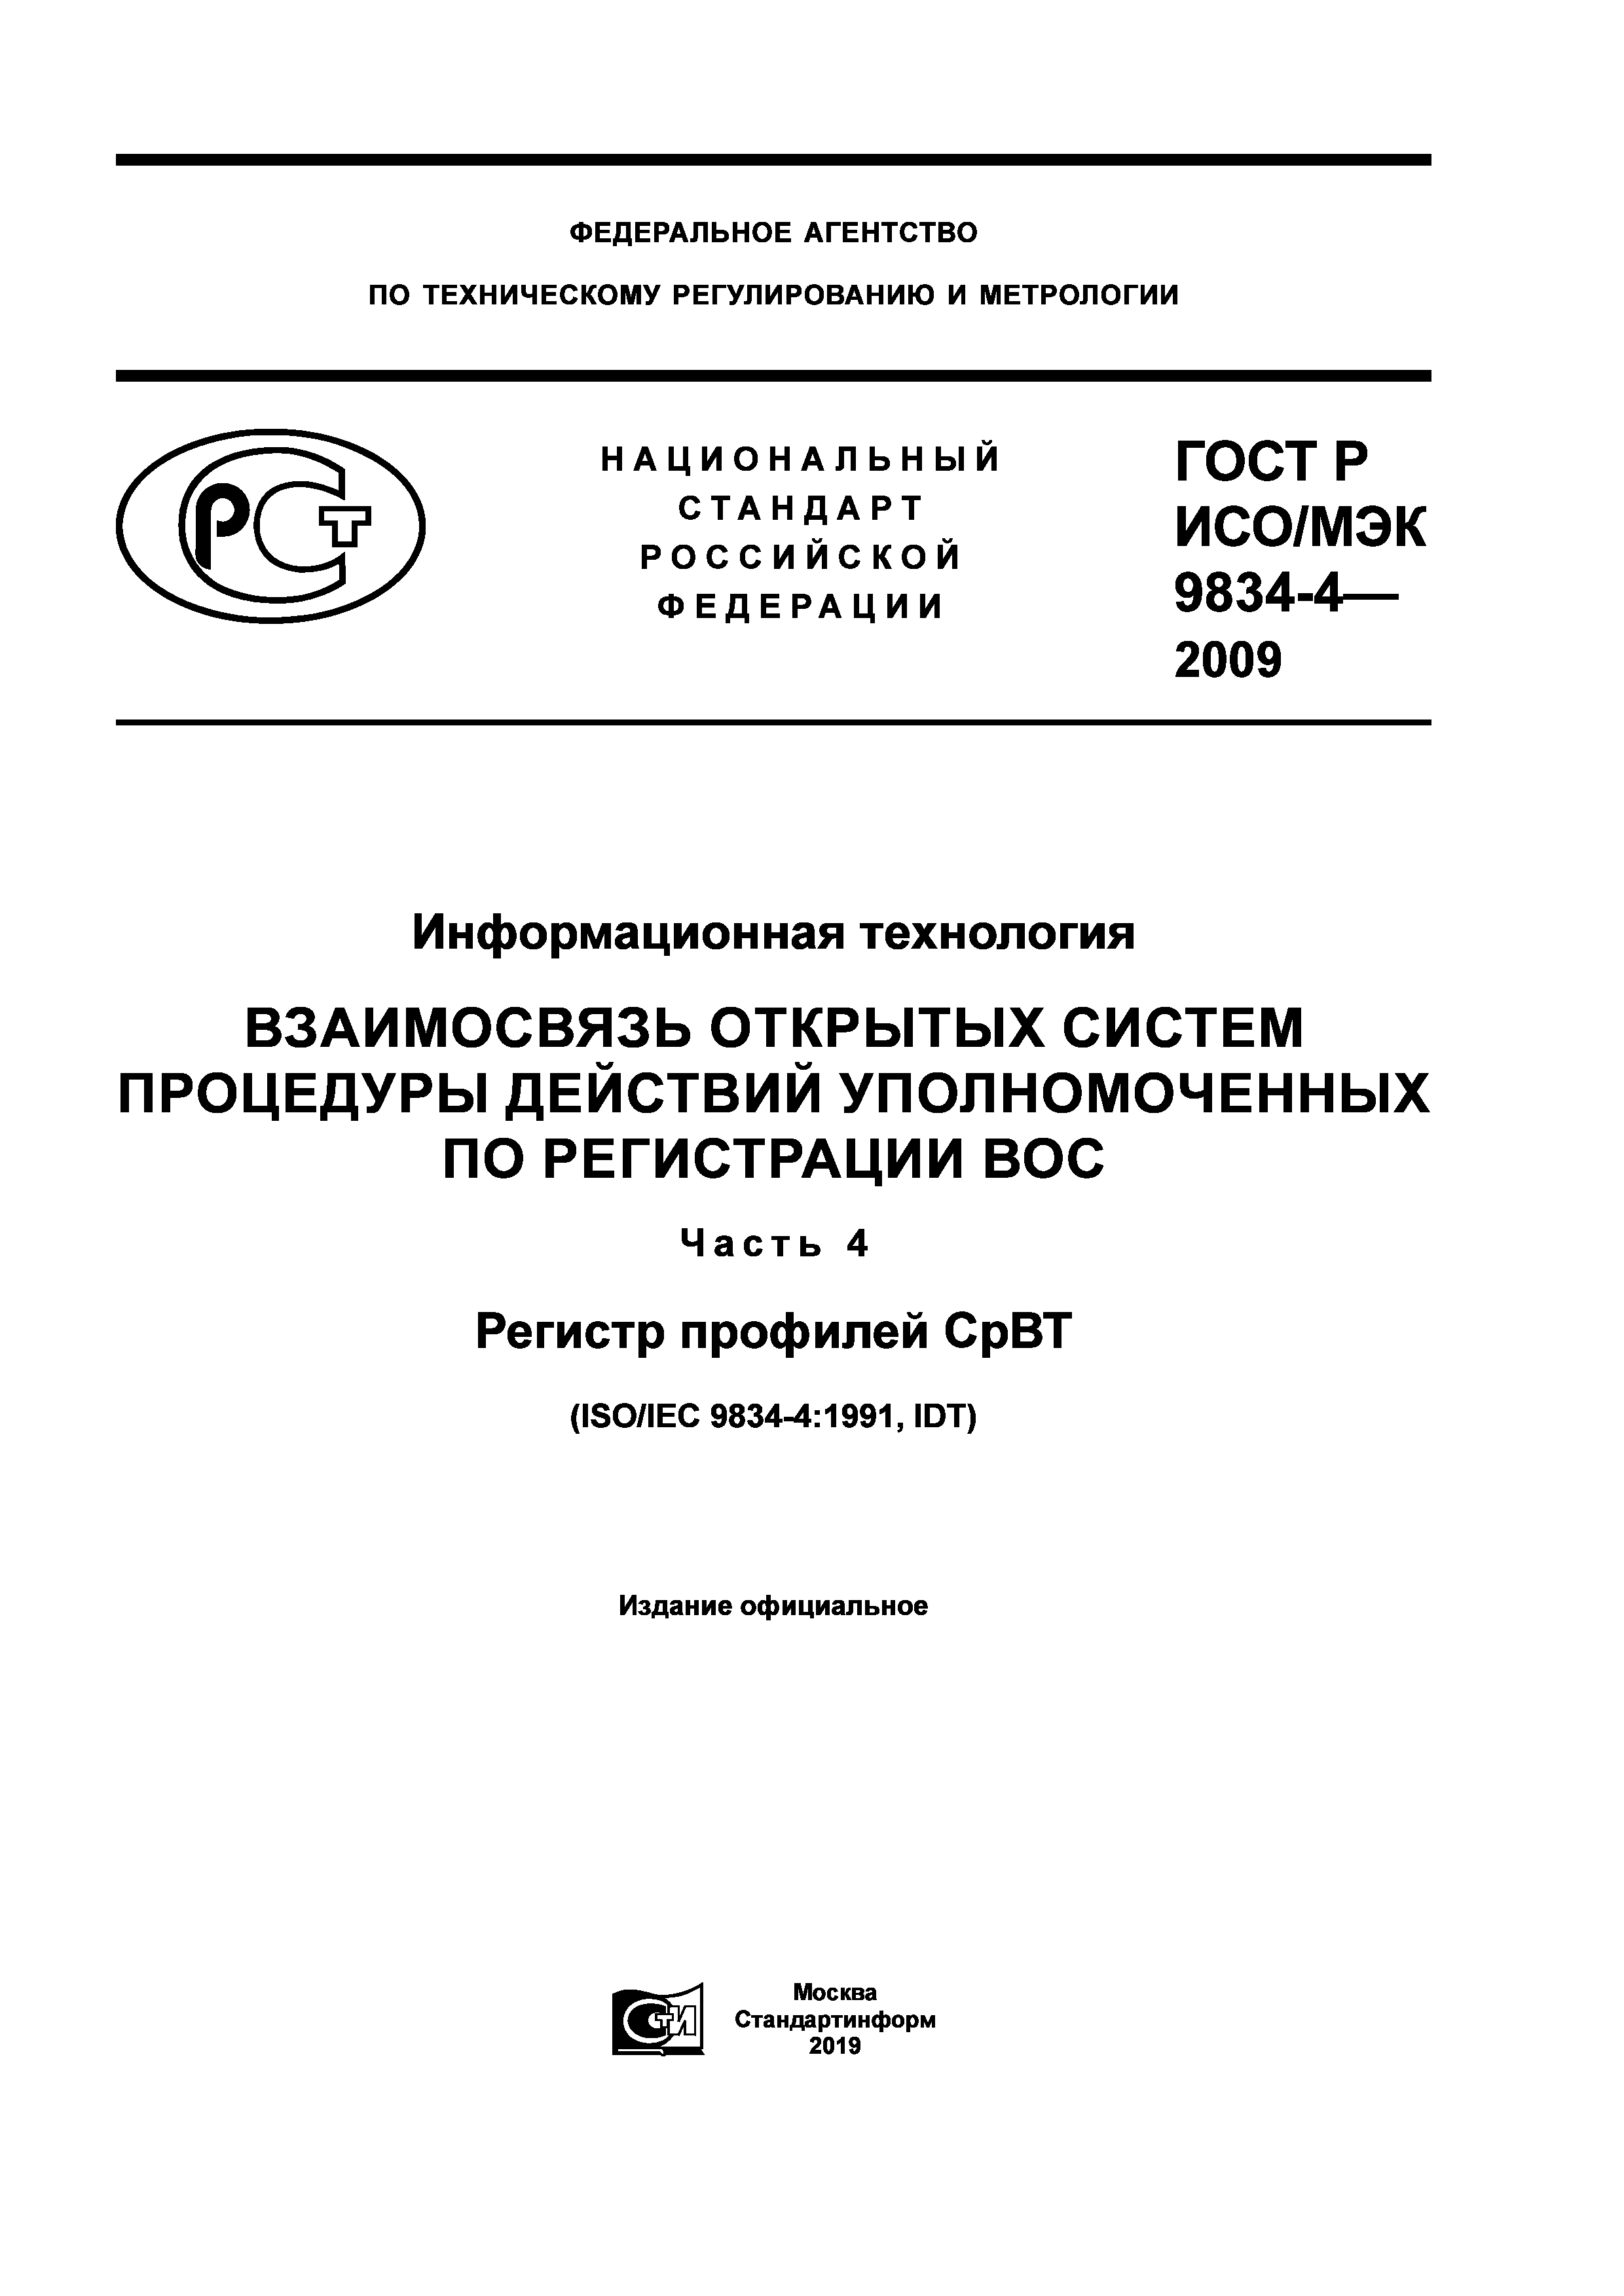 ГОСТ Р ИСО/МЭК 9834-4-2009